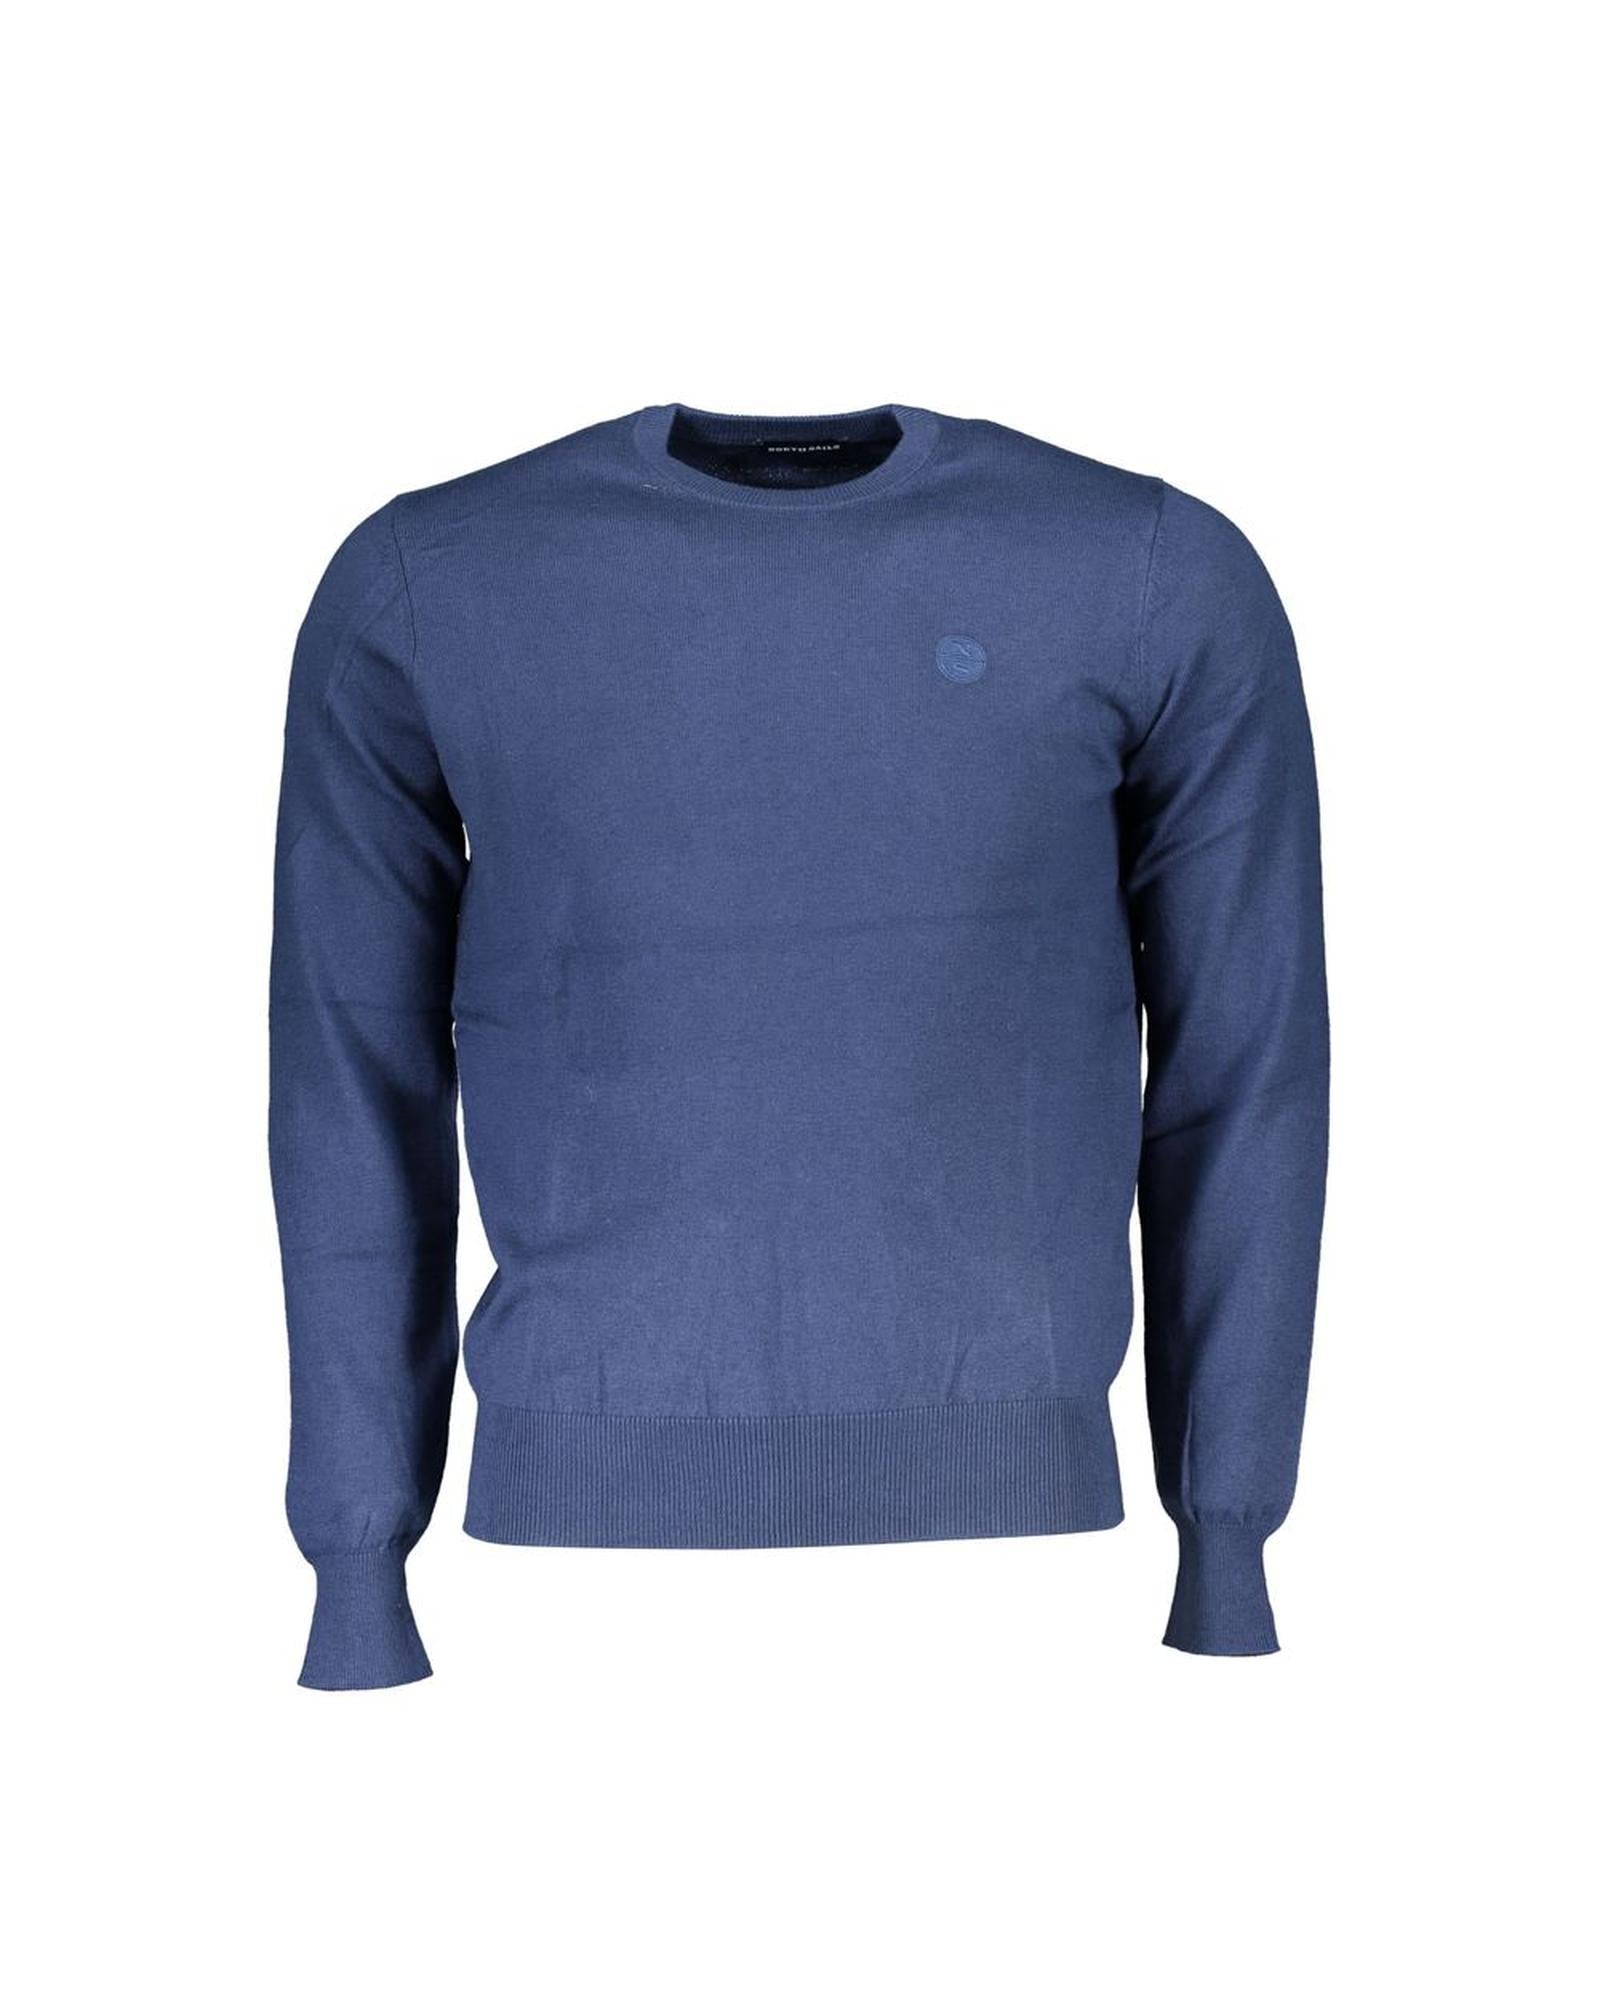 Men's Blue Fabric Shirt - 2XL